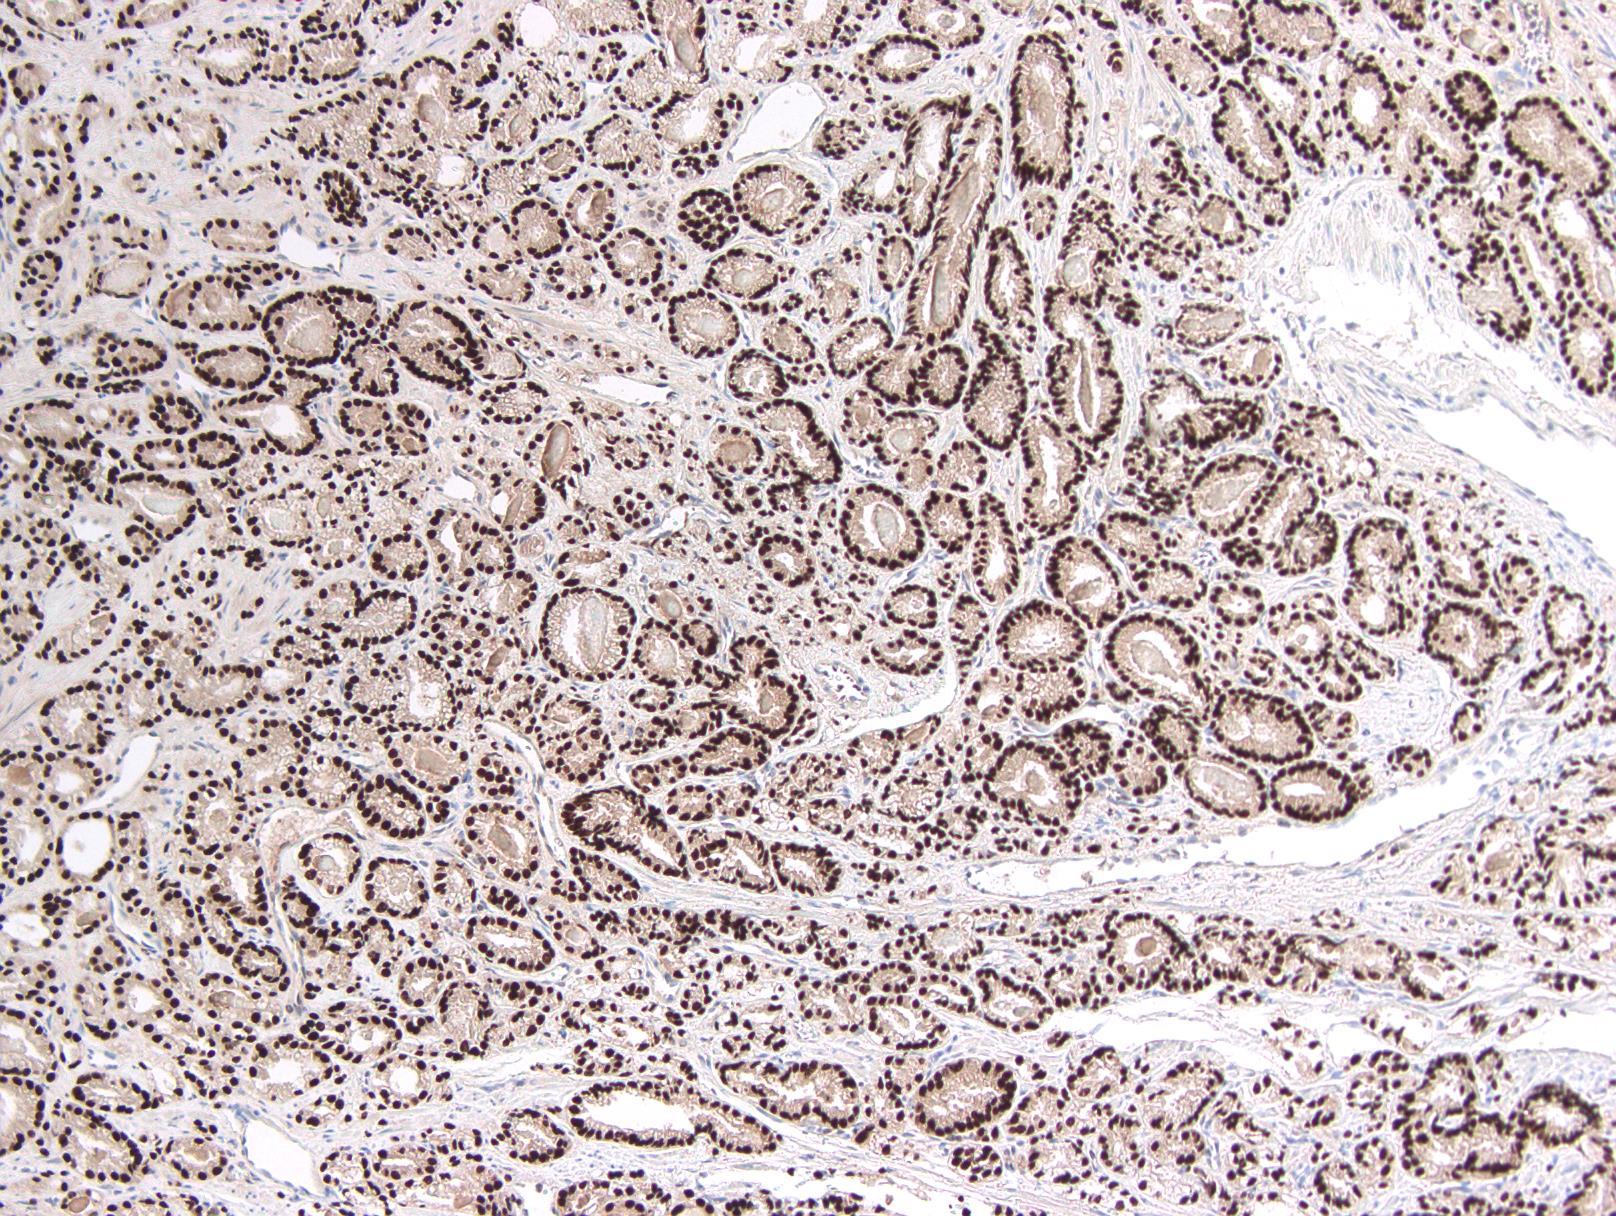 mucinous adenocarcinoma prostate pathology outlines